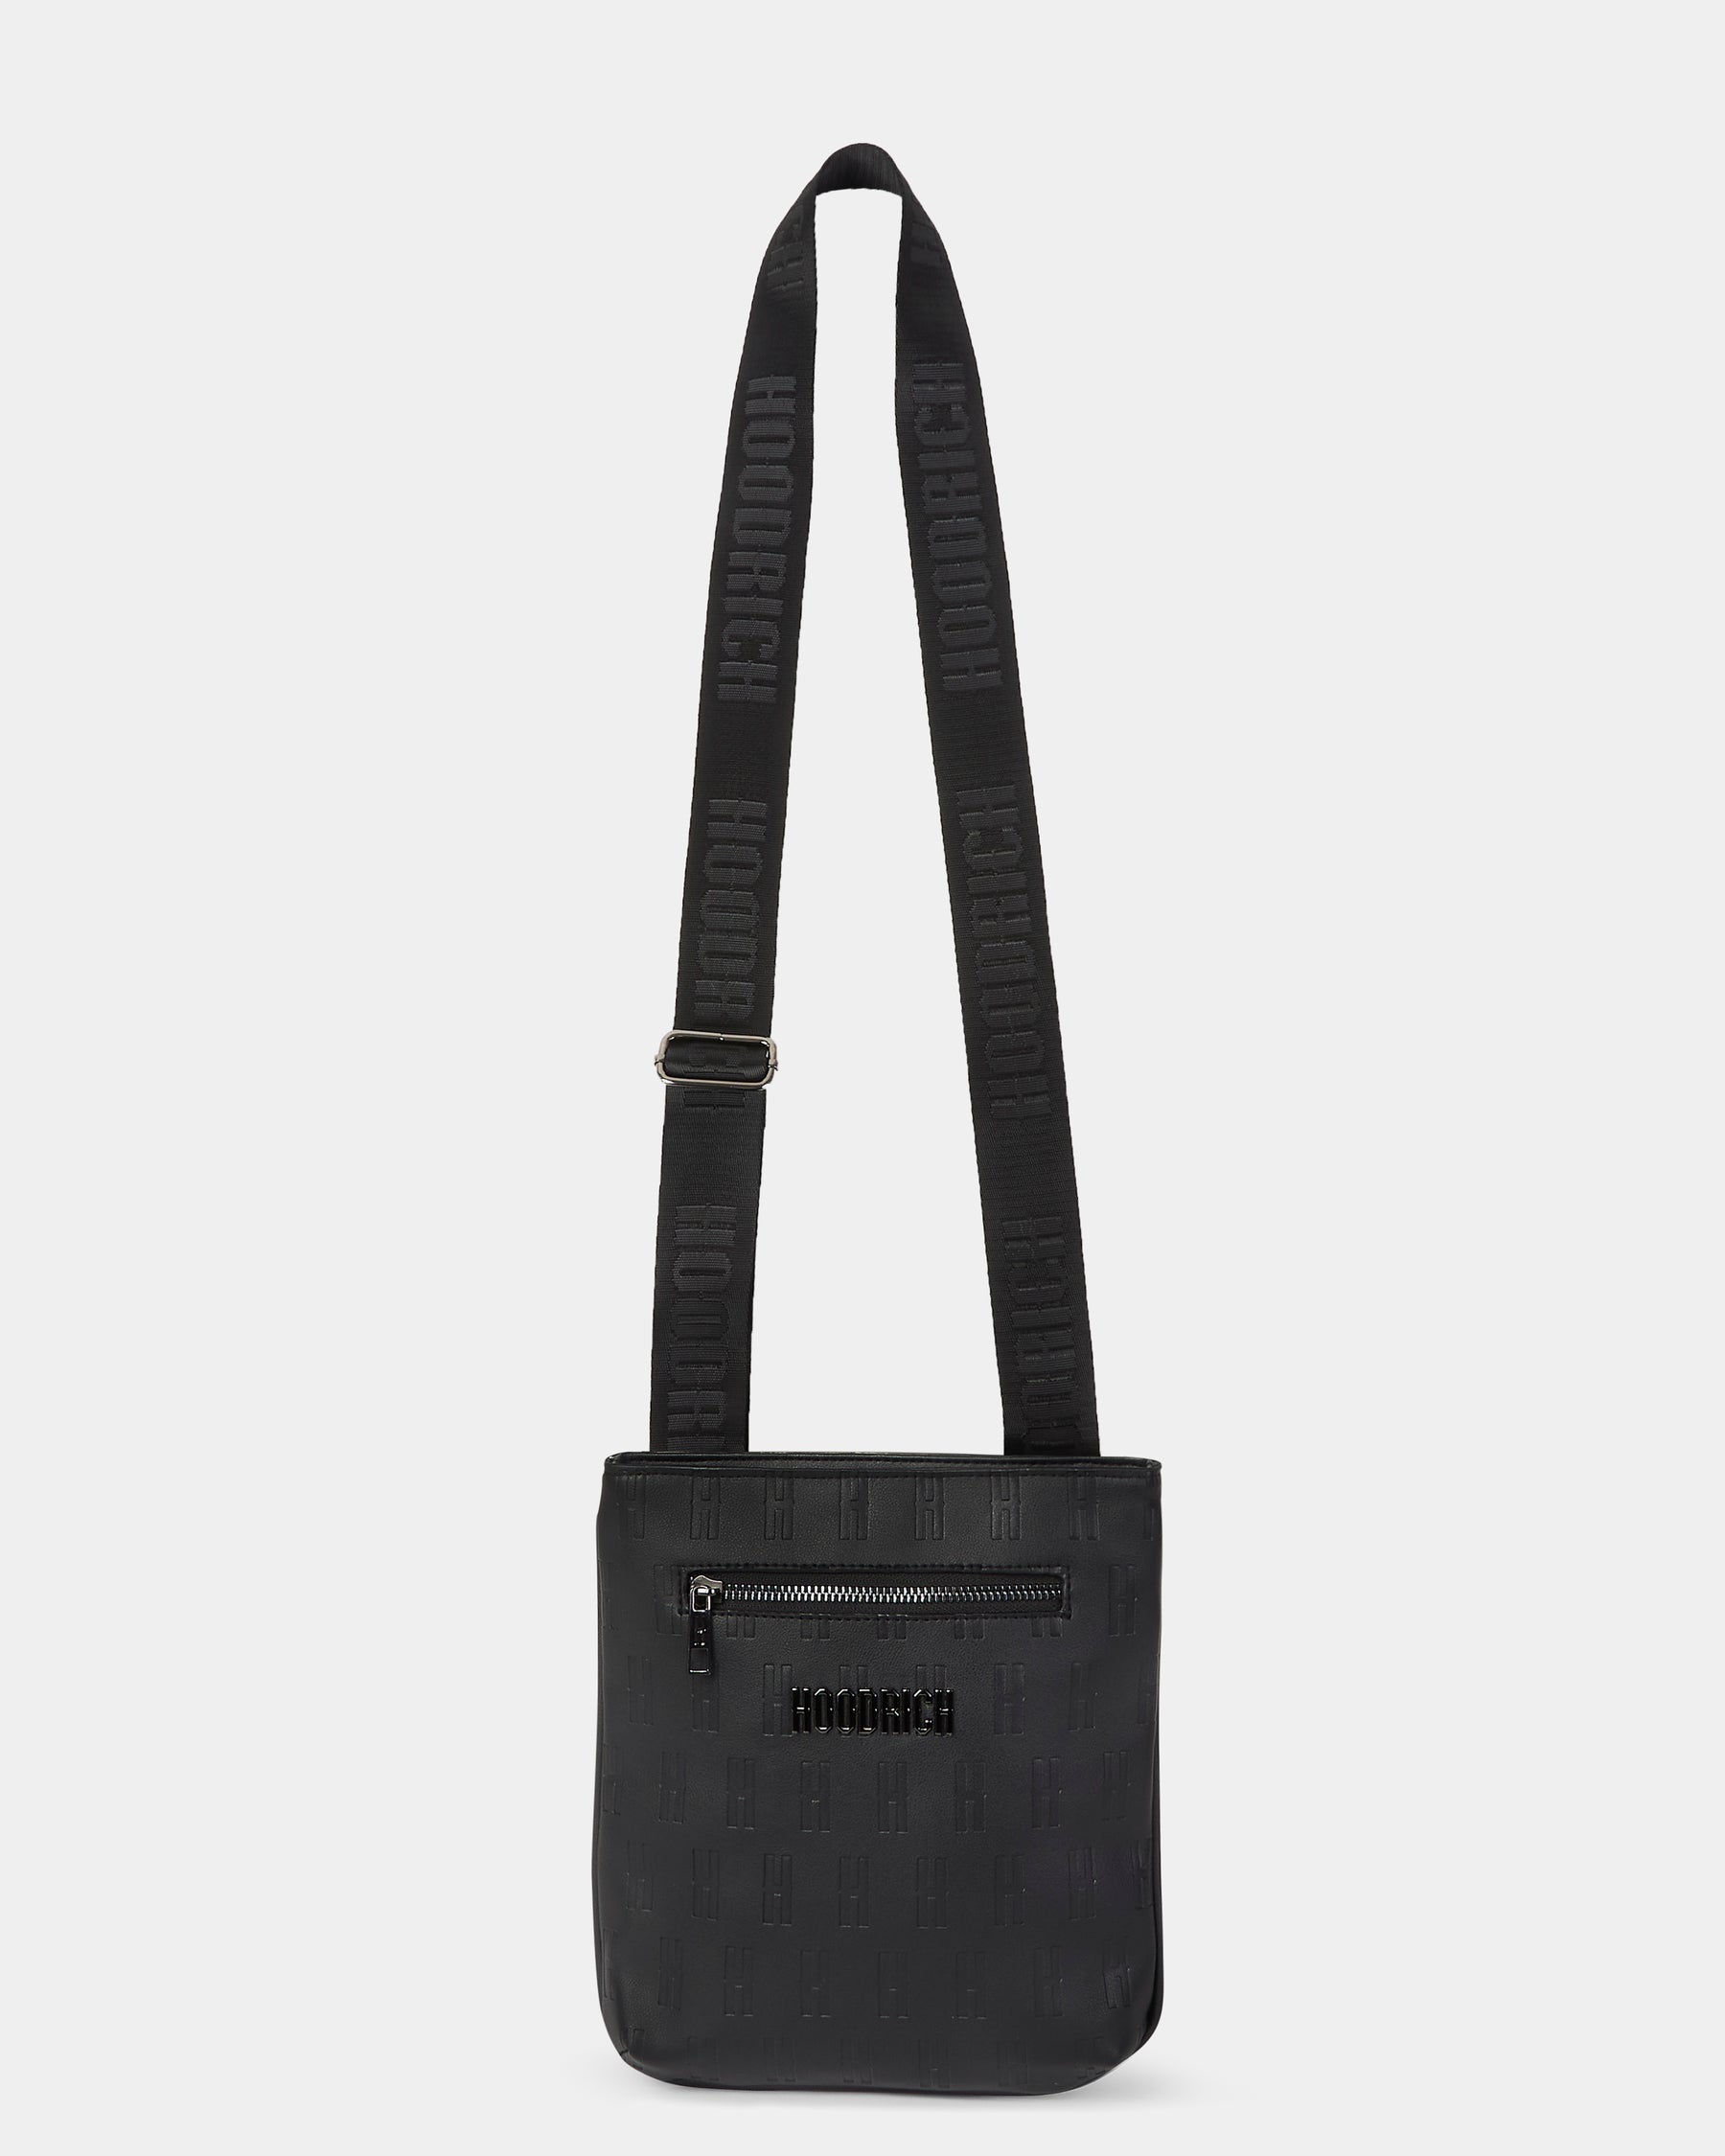 OG Exclusive Mini Bag - Black/Silver